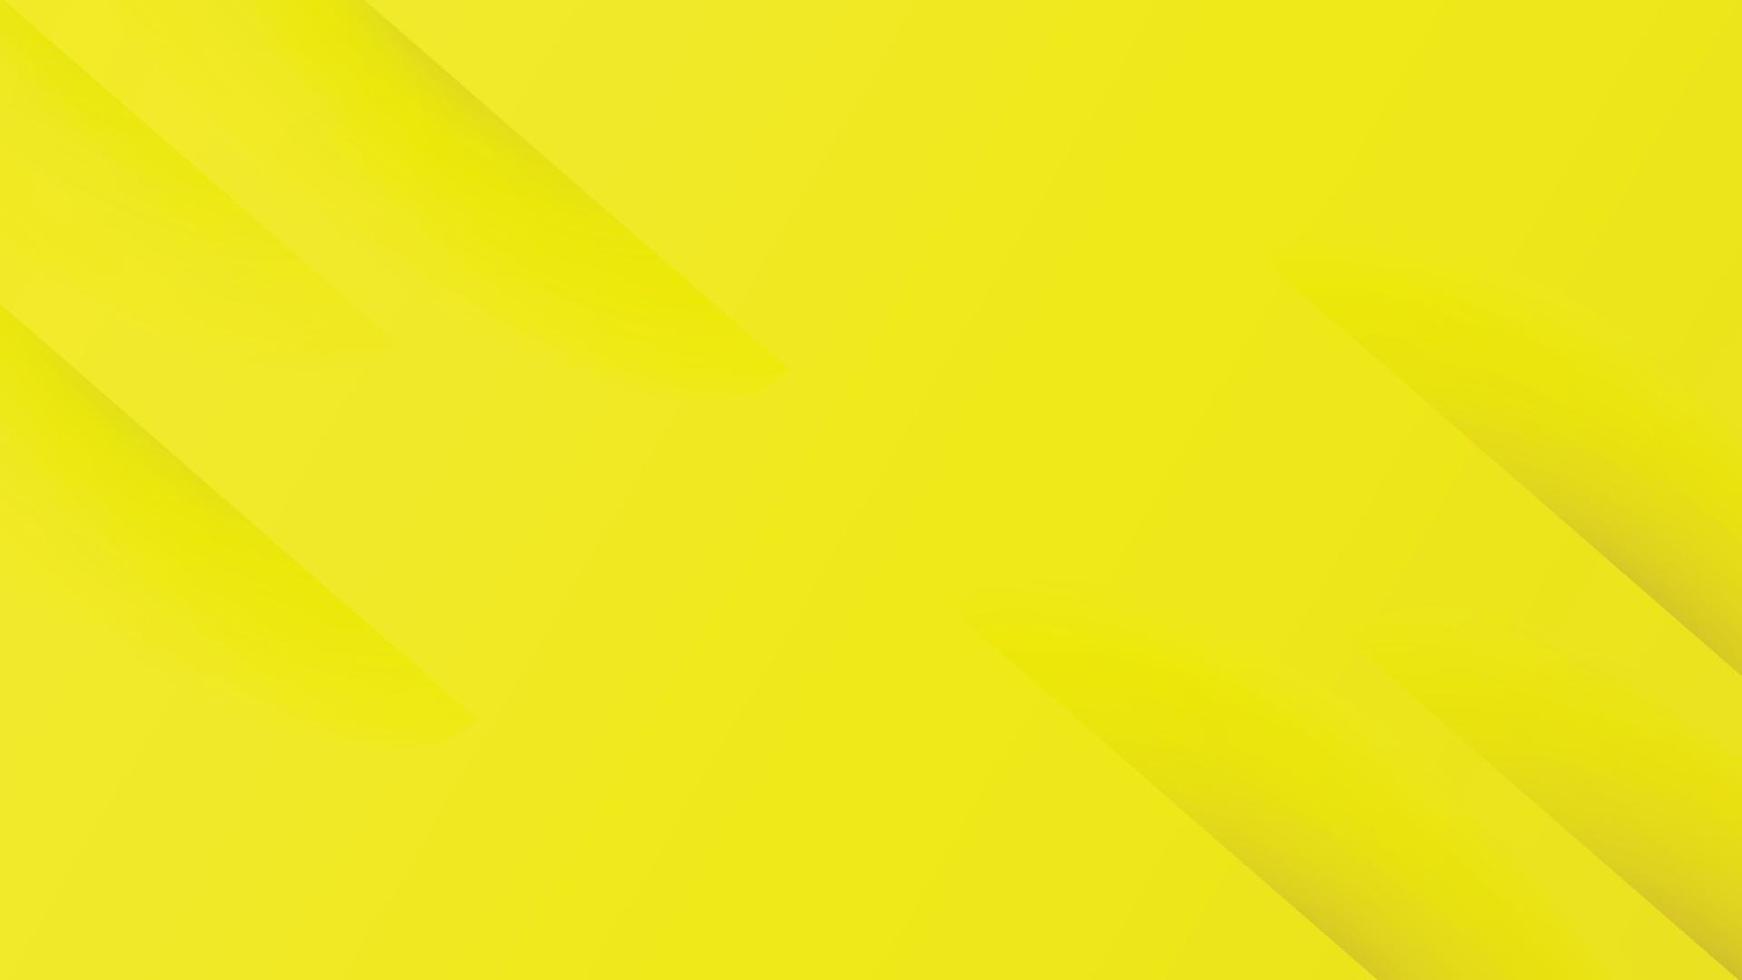 fondo amarillo degradado abstracto con rayas diagonales. se puede utilizar para la plantilla de folleto de portada, póster, banner web, anuncio impreso, etc. ilustración vectorial vector